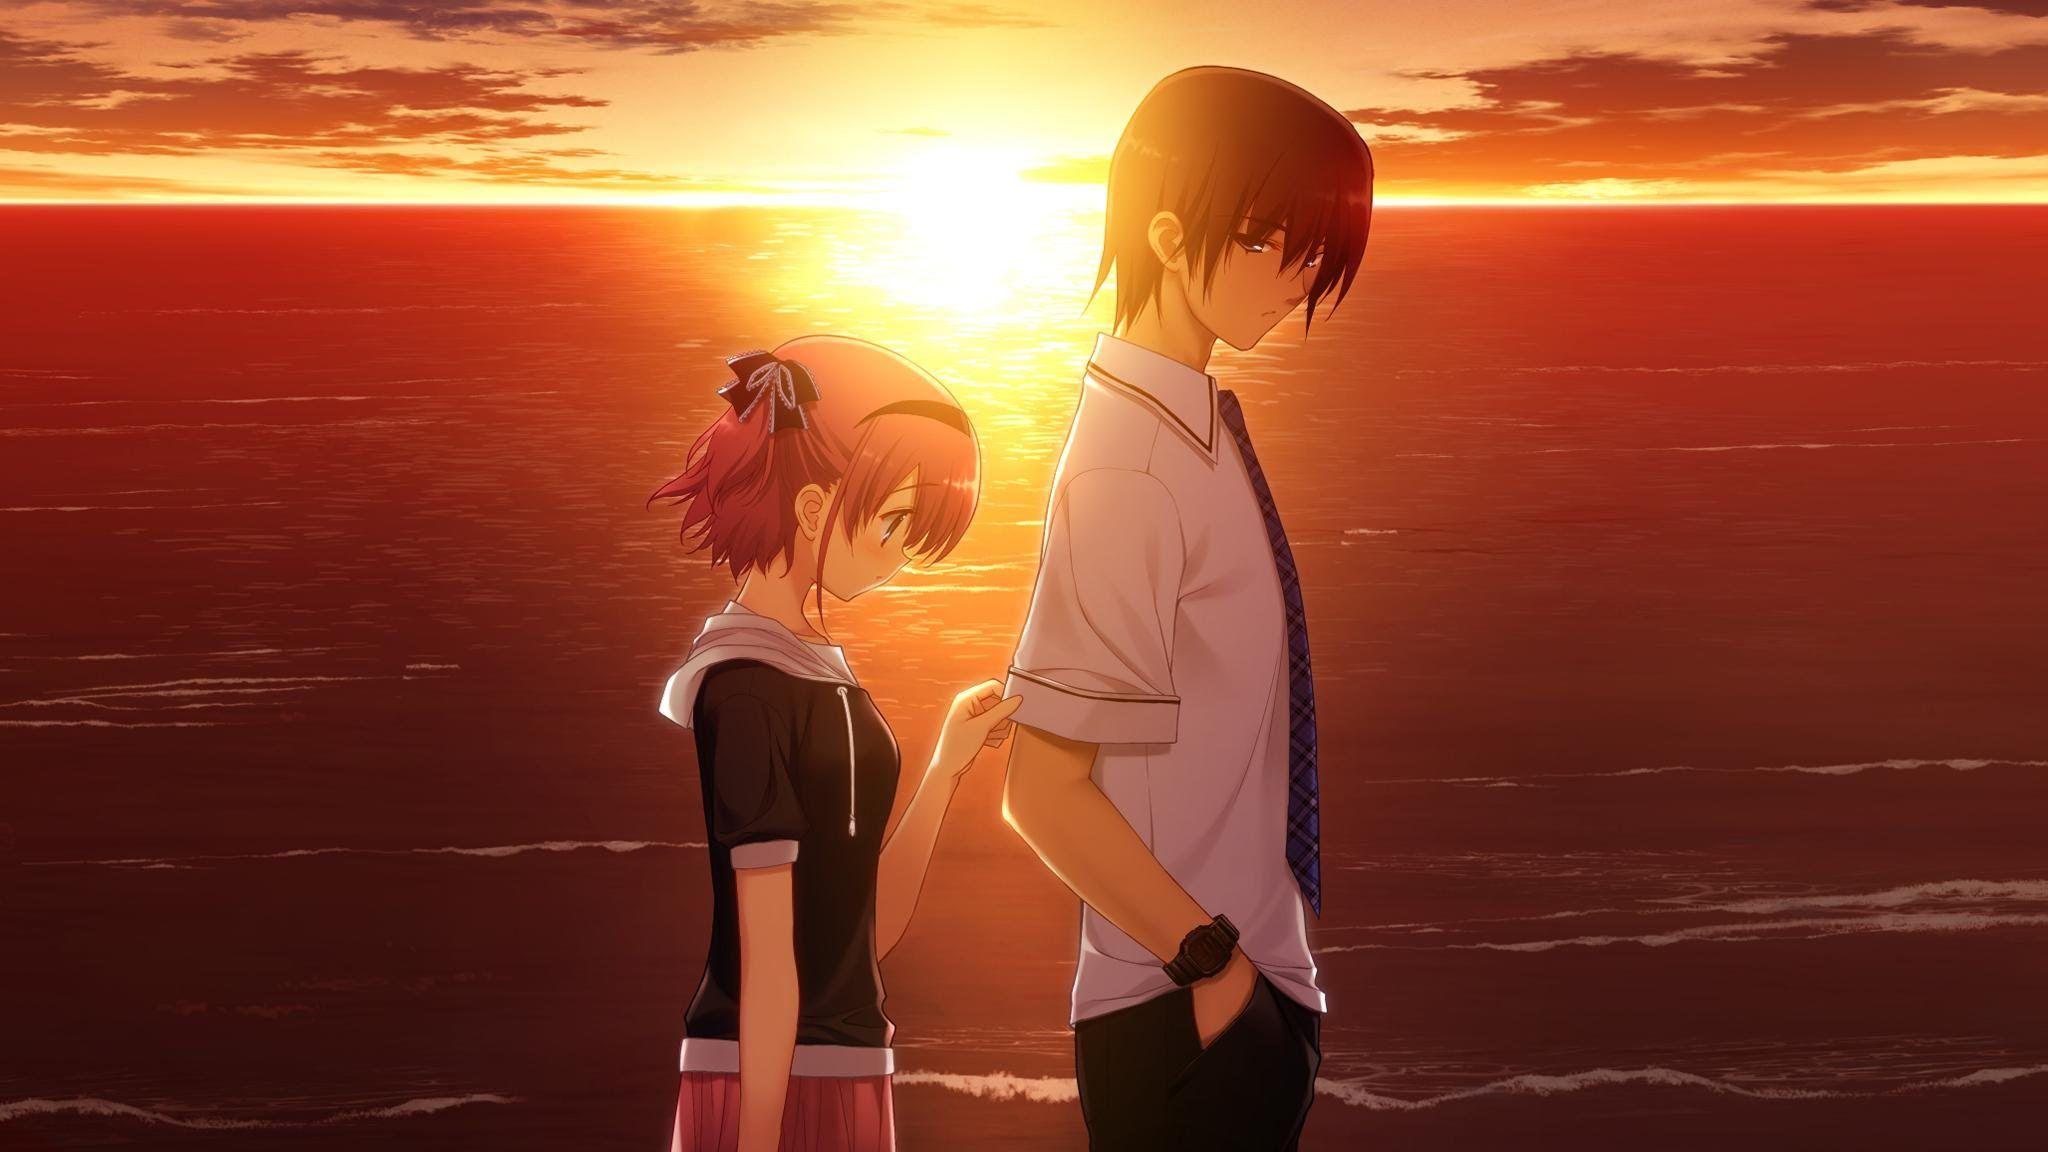 2048x1152 Sad Couple In The Sunset Hình nền - Cặp đôi Anime dễ thương 2017